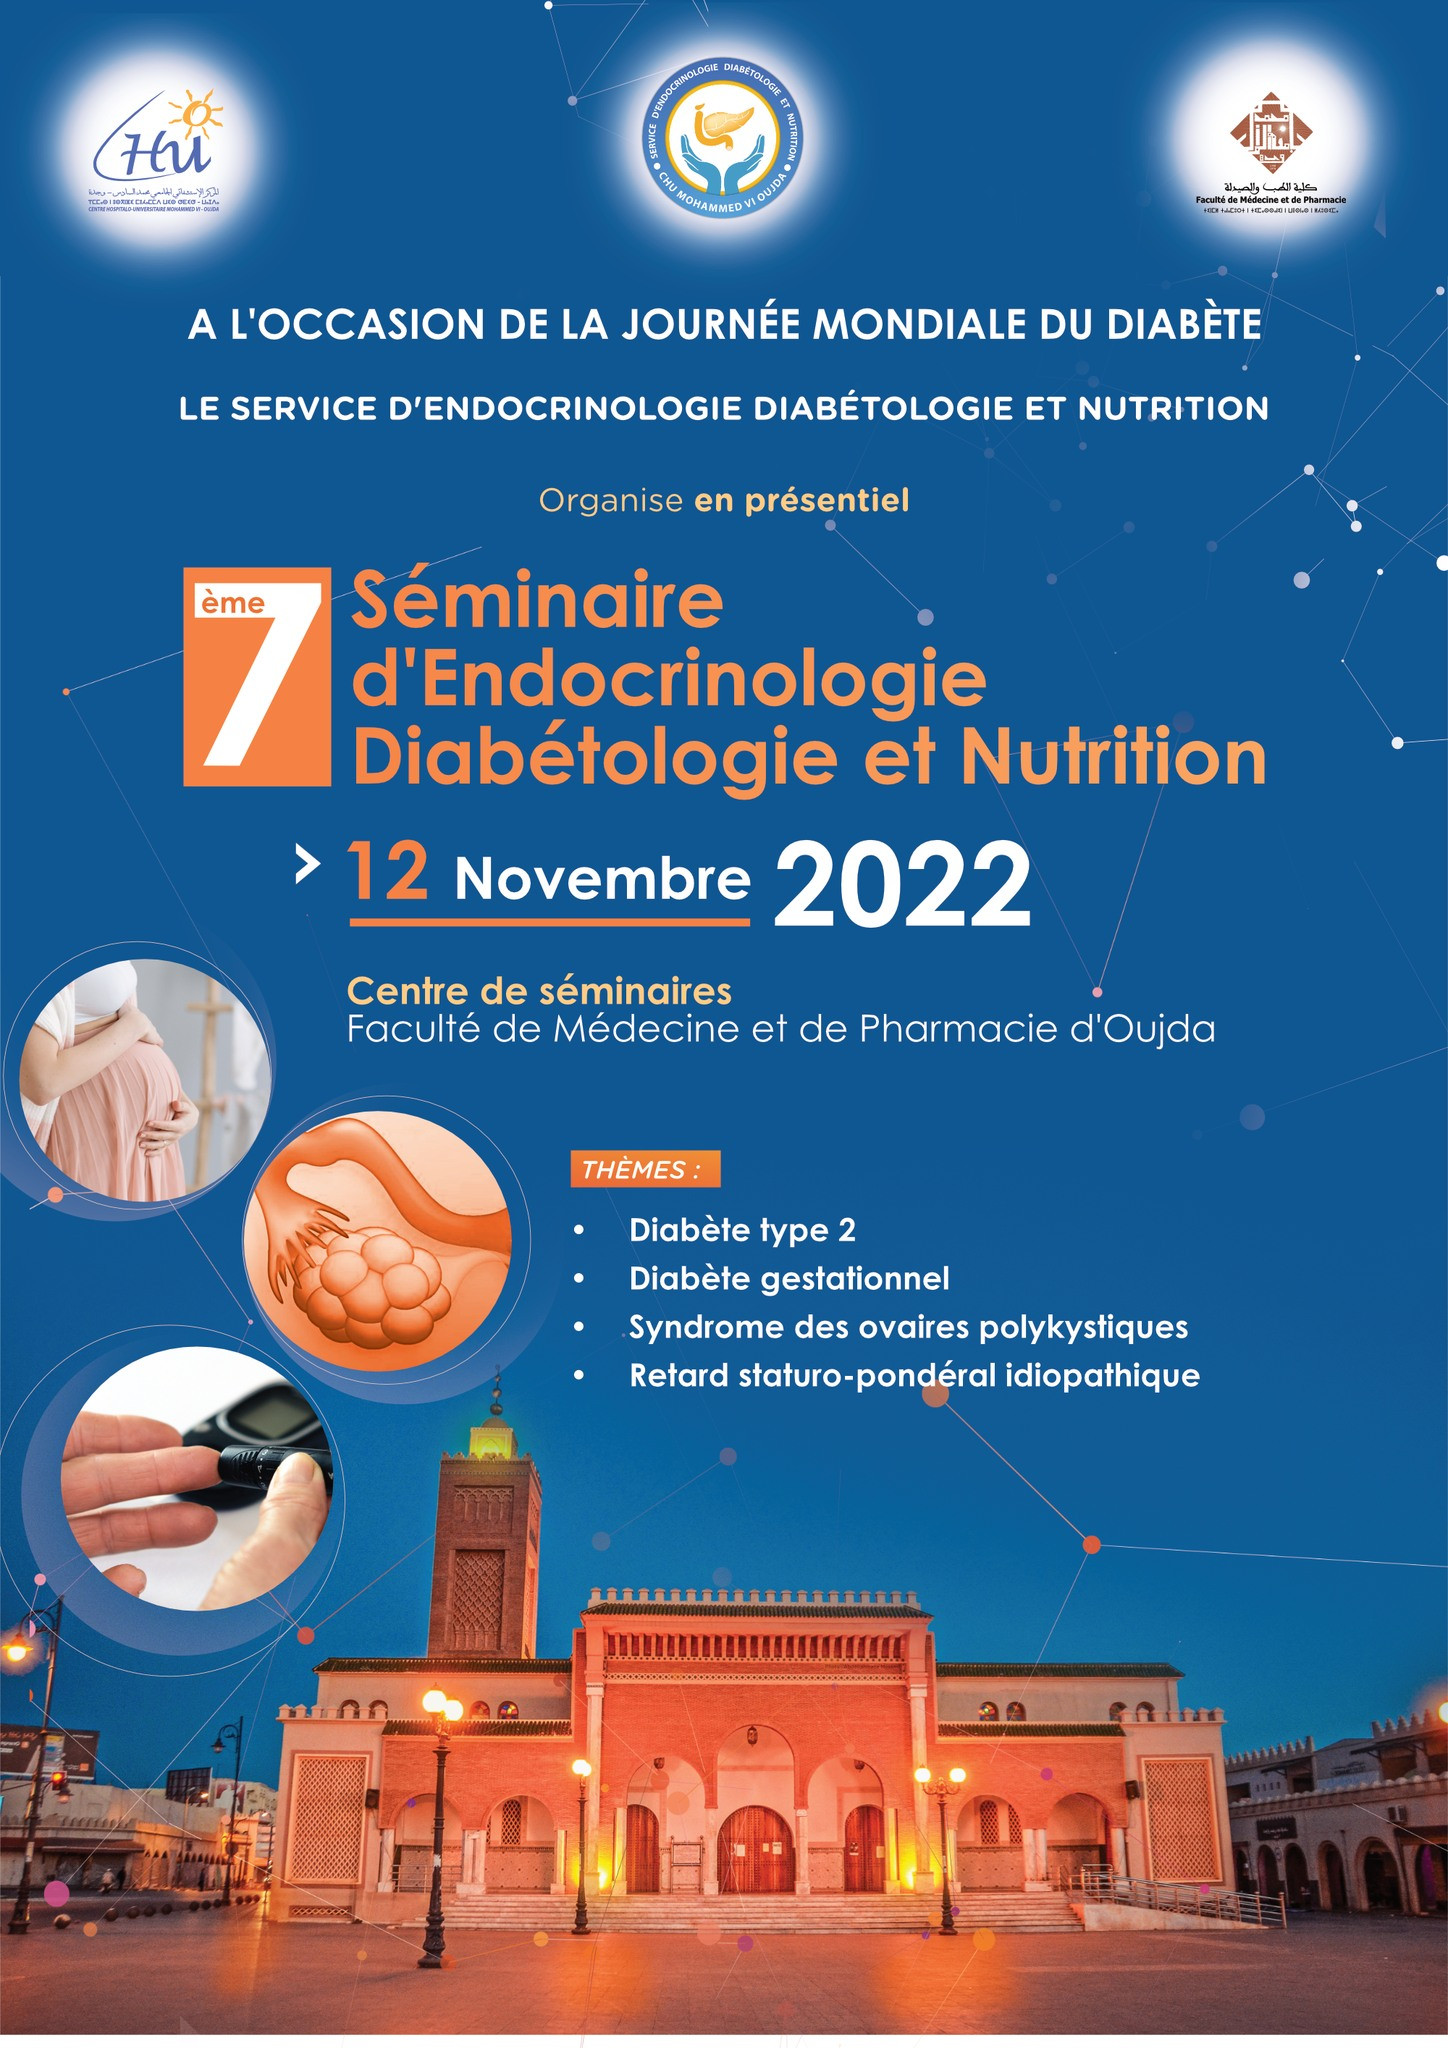 7ème séminaire d'Endocrinologie Diabétologie et Nutrition